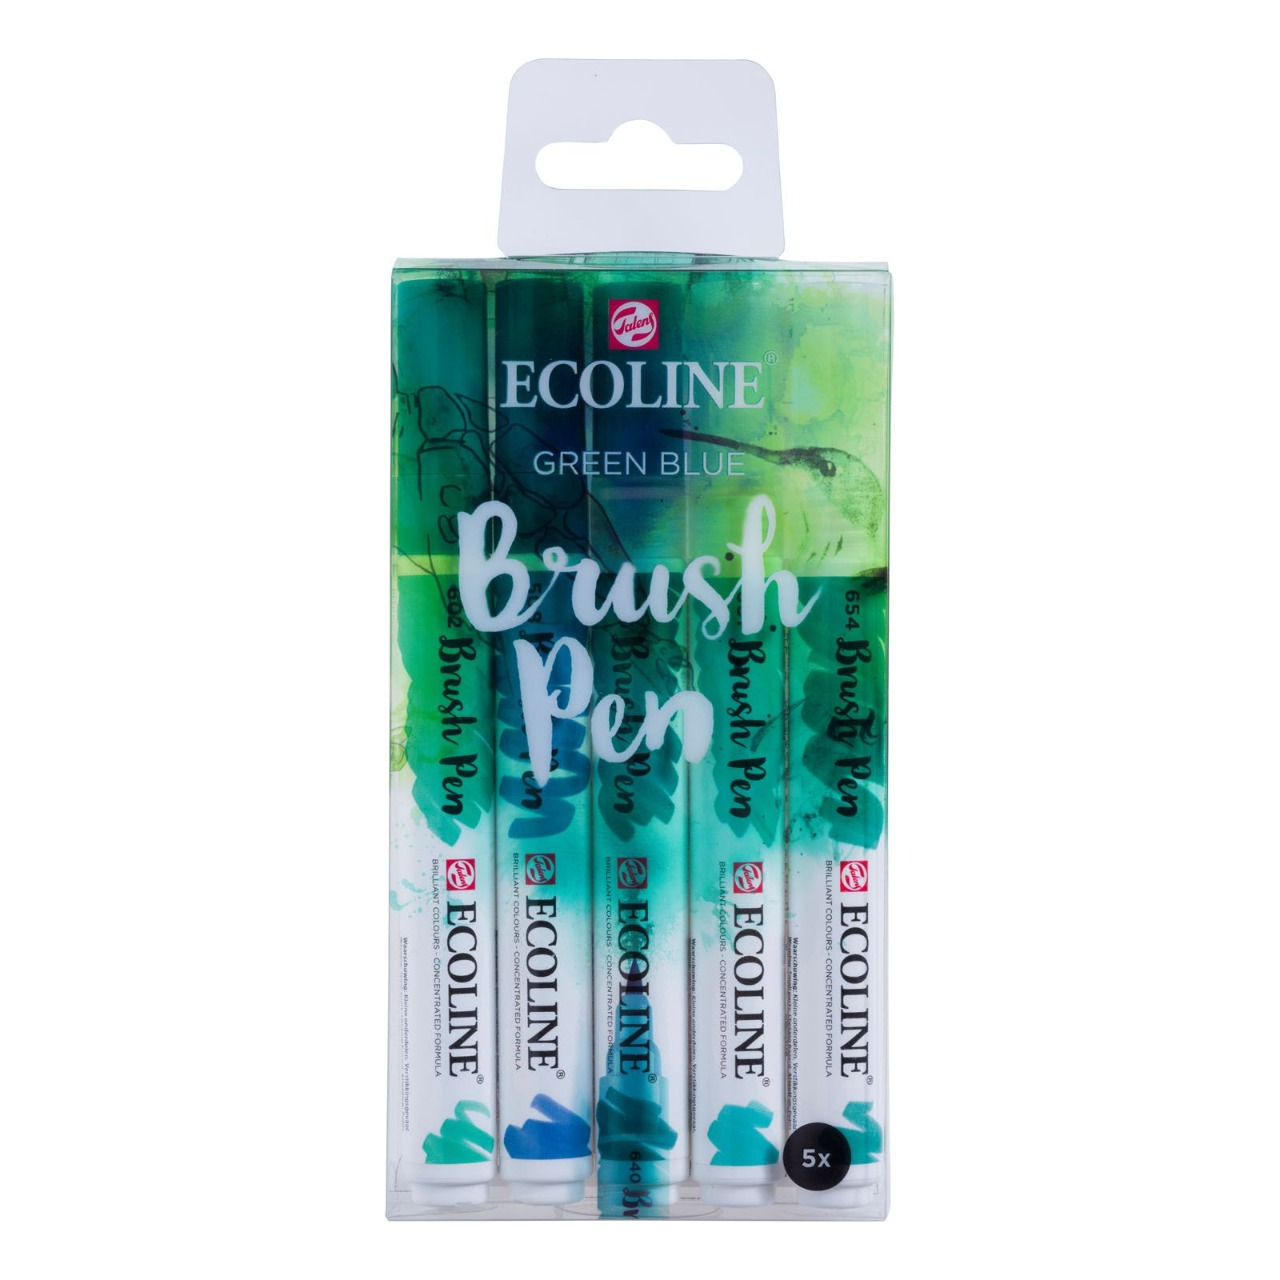 5 brush pen, Ecoline - Green blue - feutres pourvus d'aquarelle